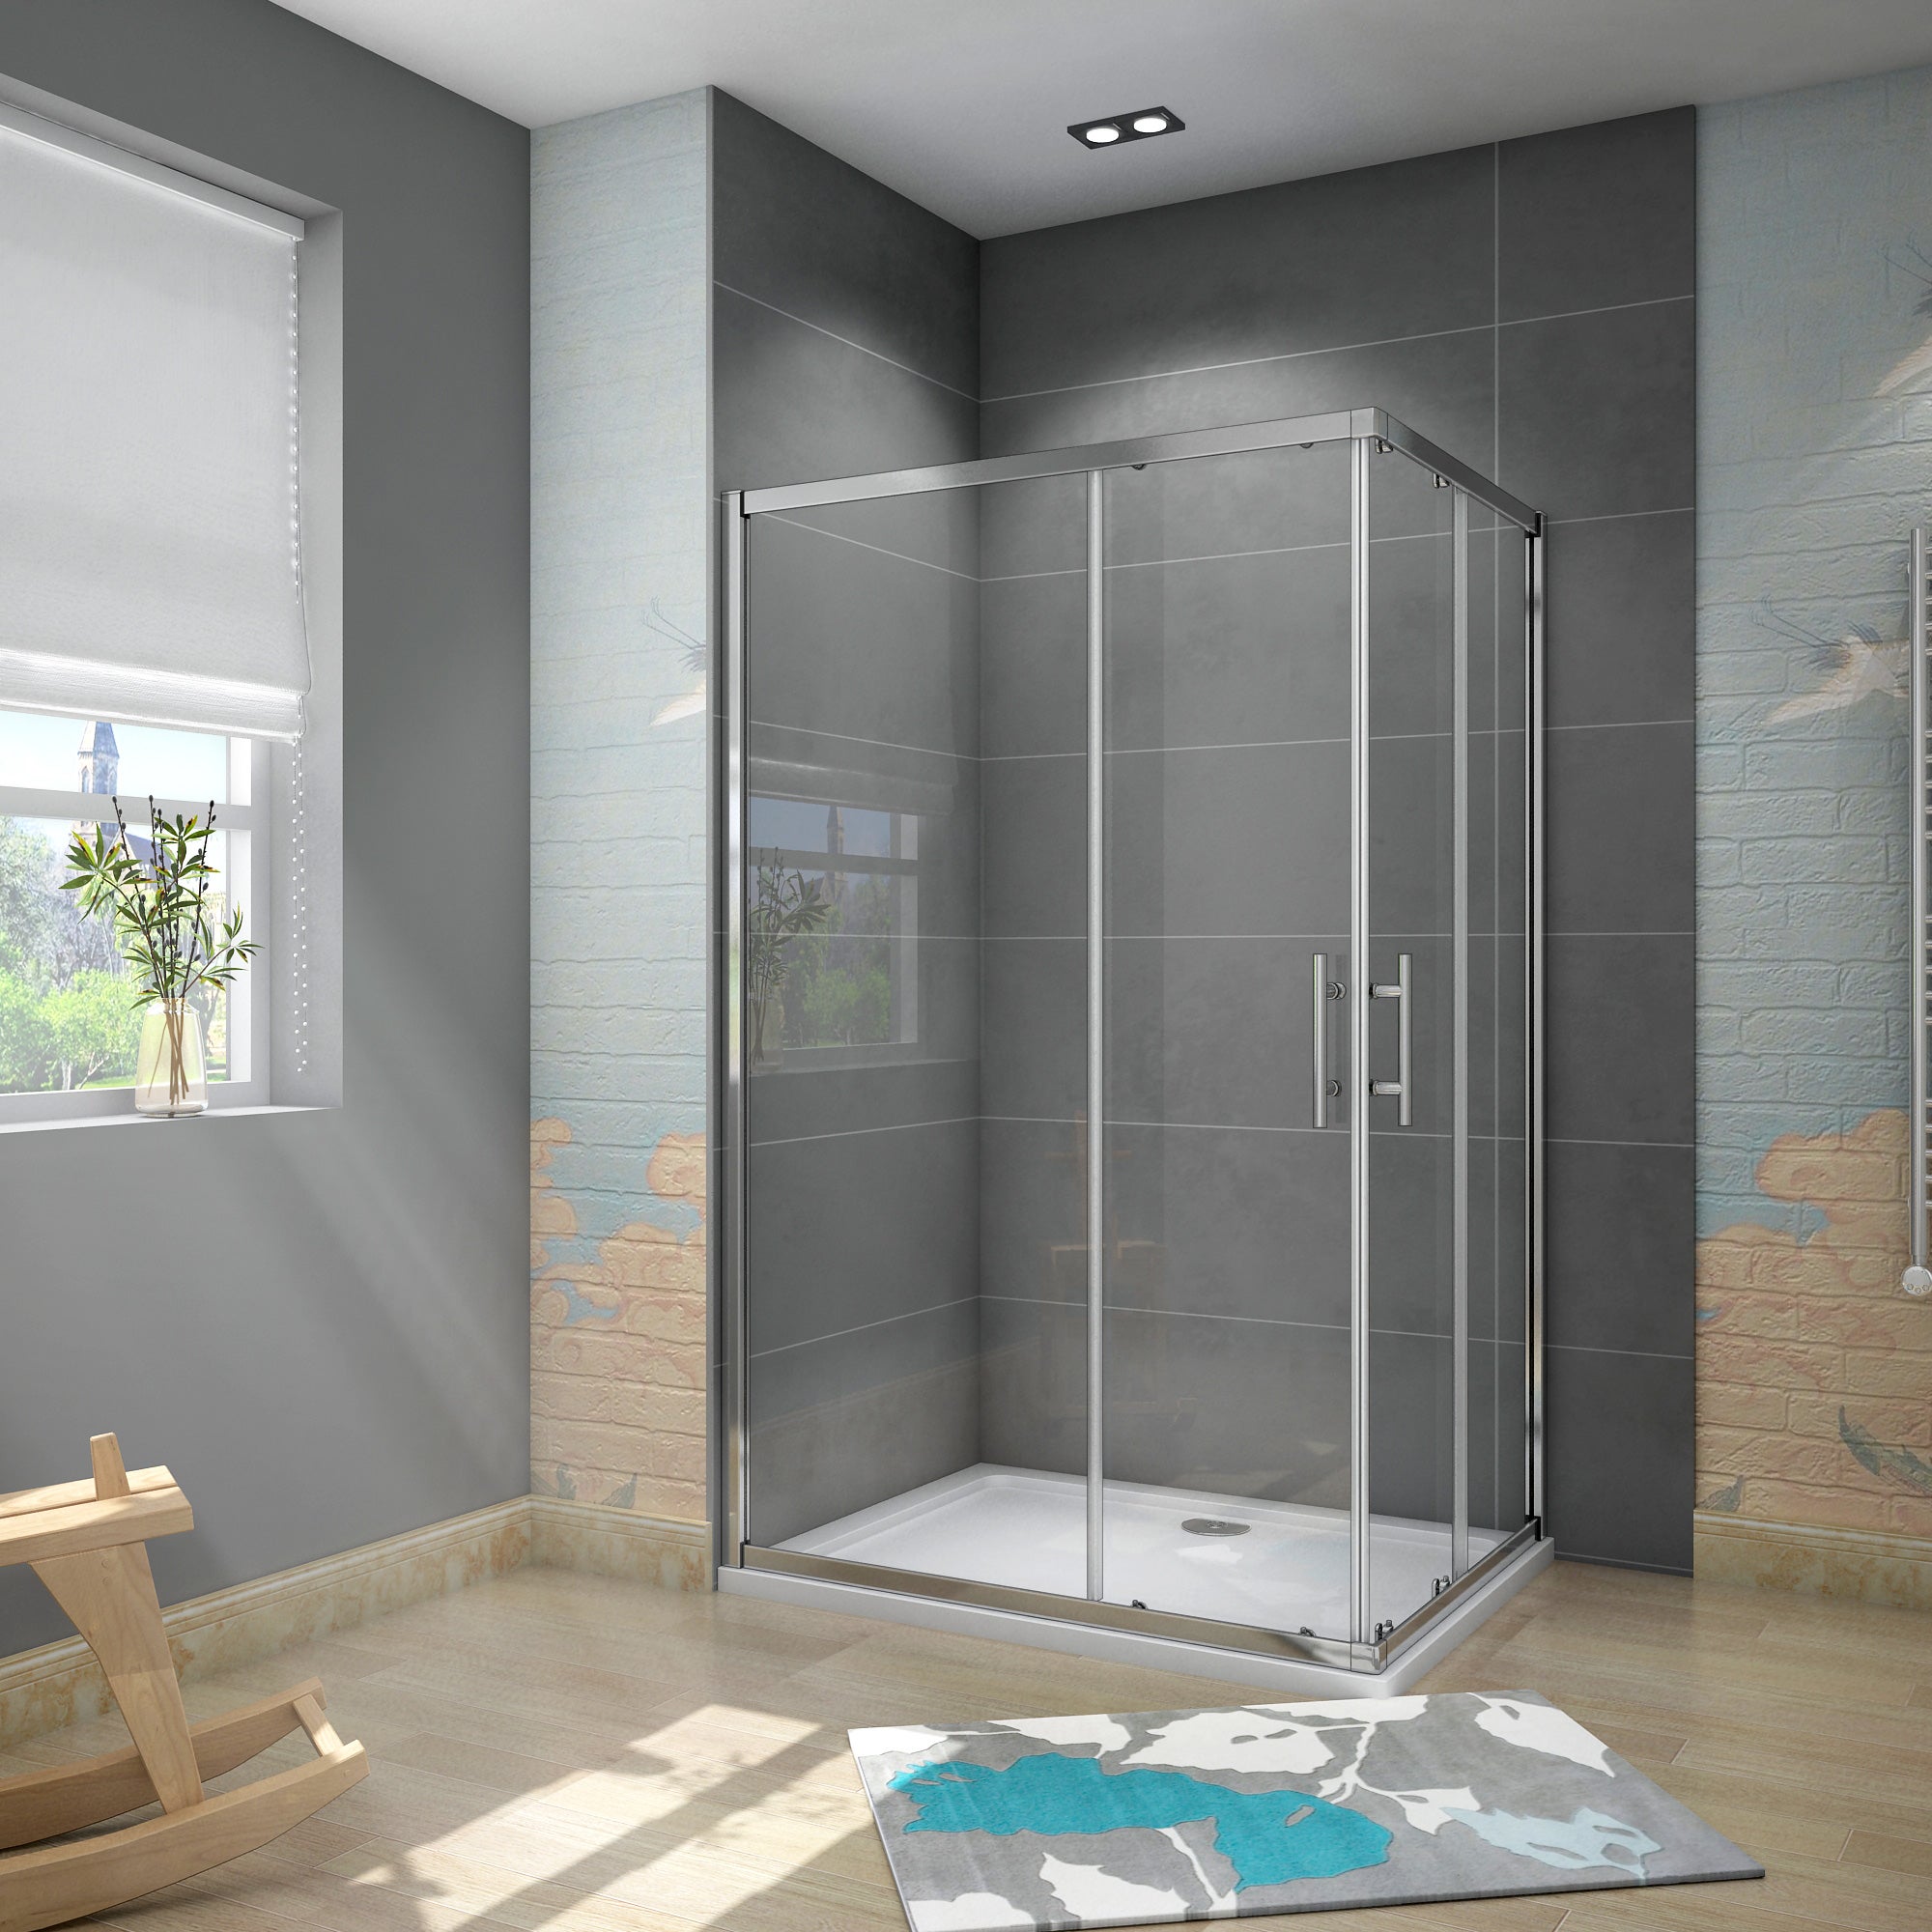 Vetro doccia fisso, arredo bagno, box doccia su misura online, vendita  online di vetri per box doccia - Vetreria Dimensione Vetro